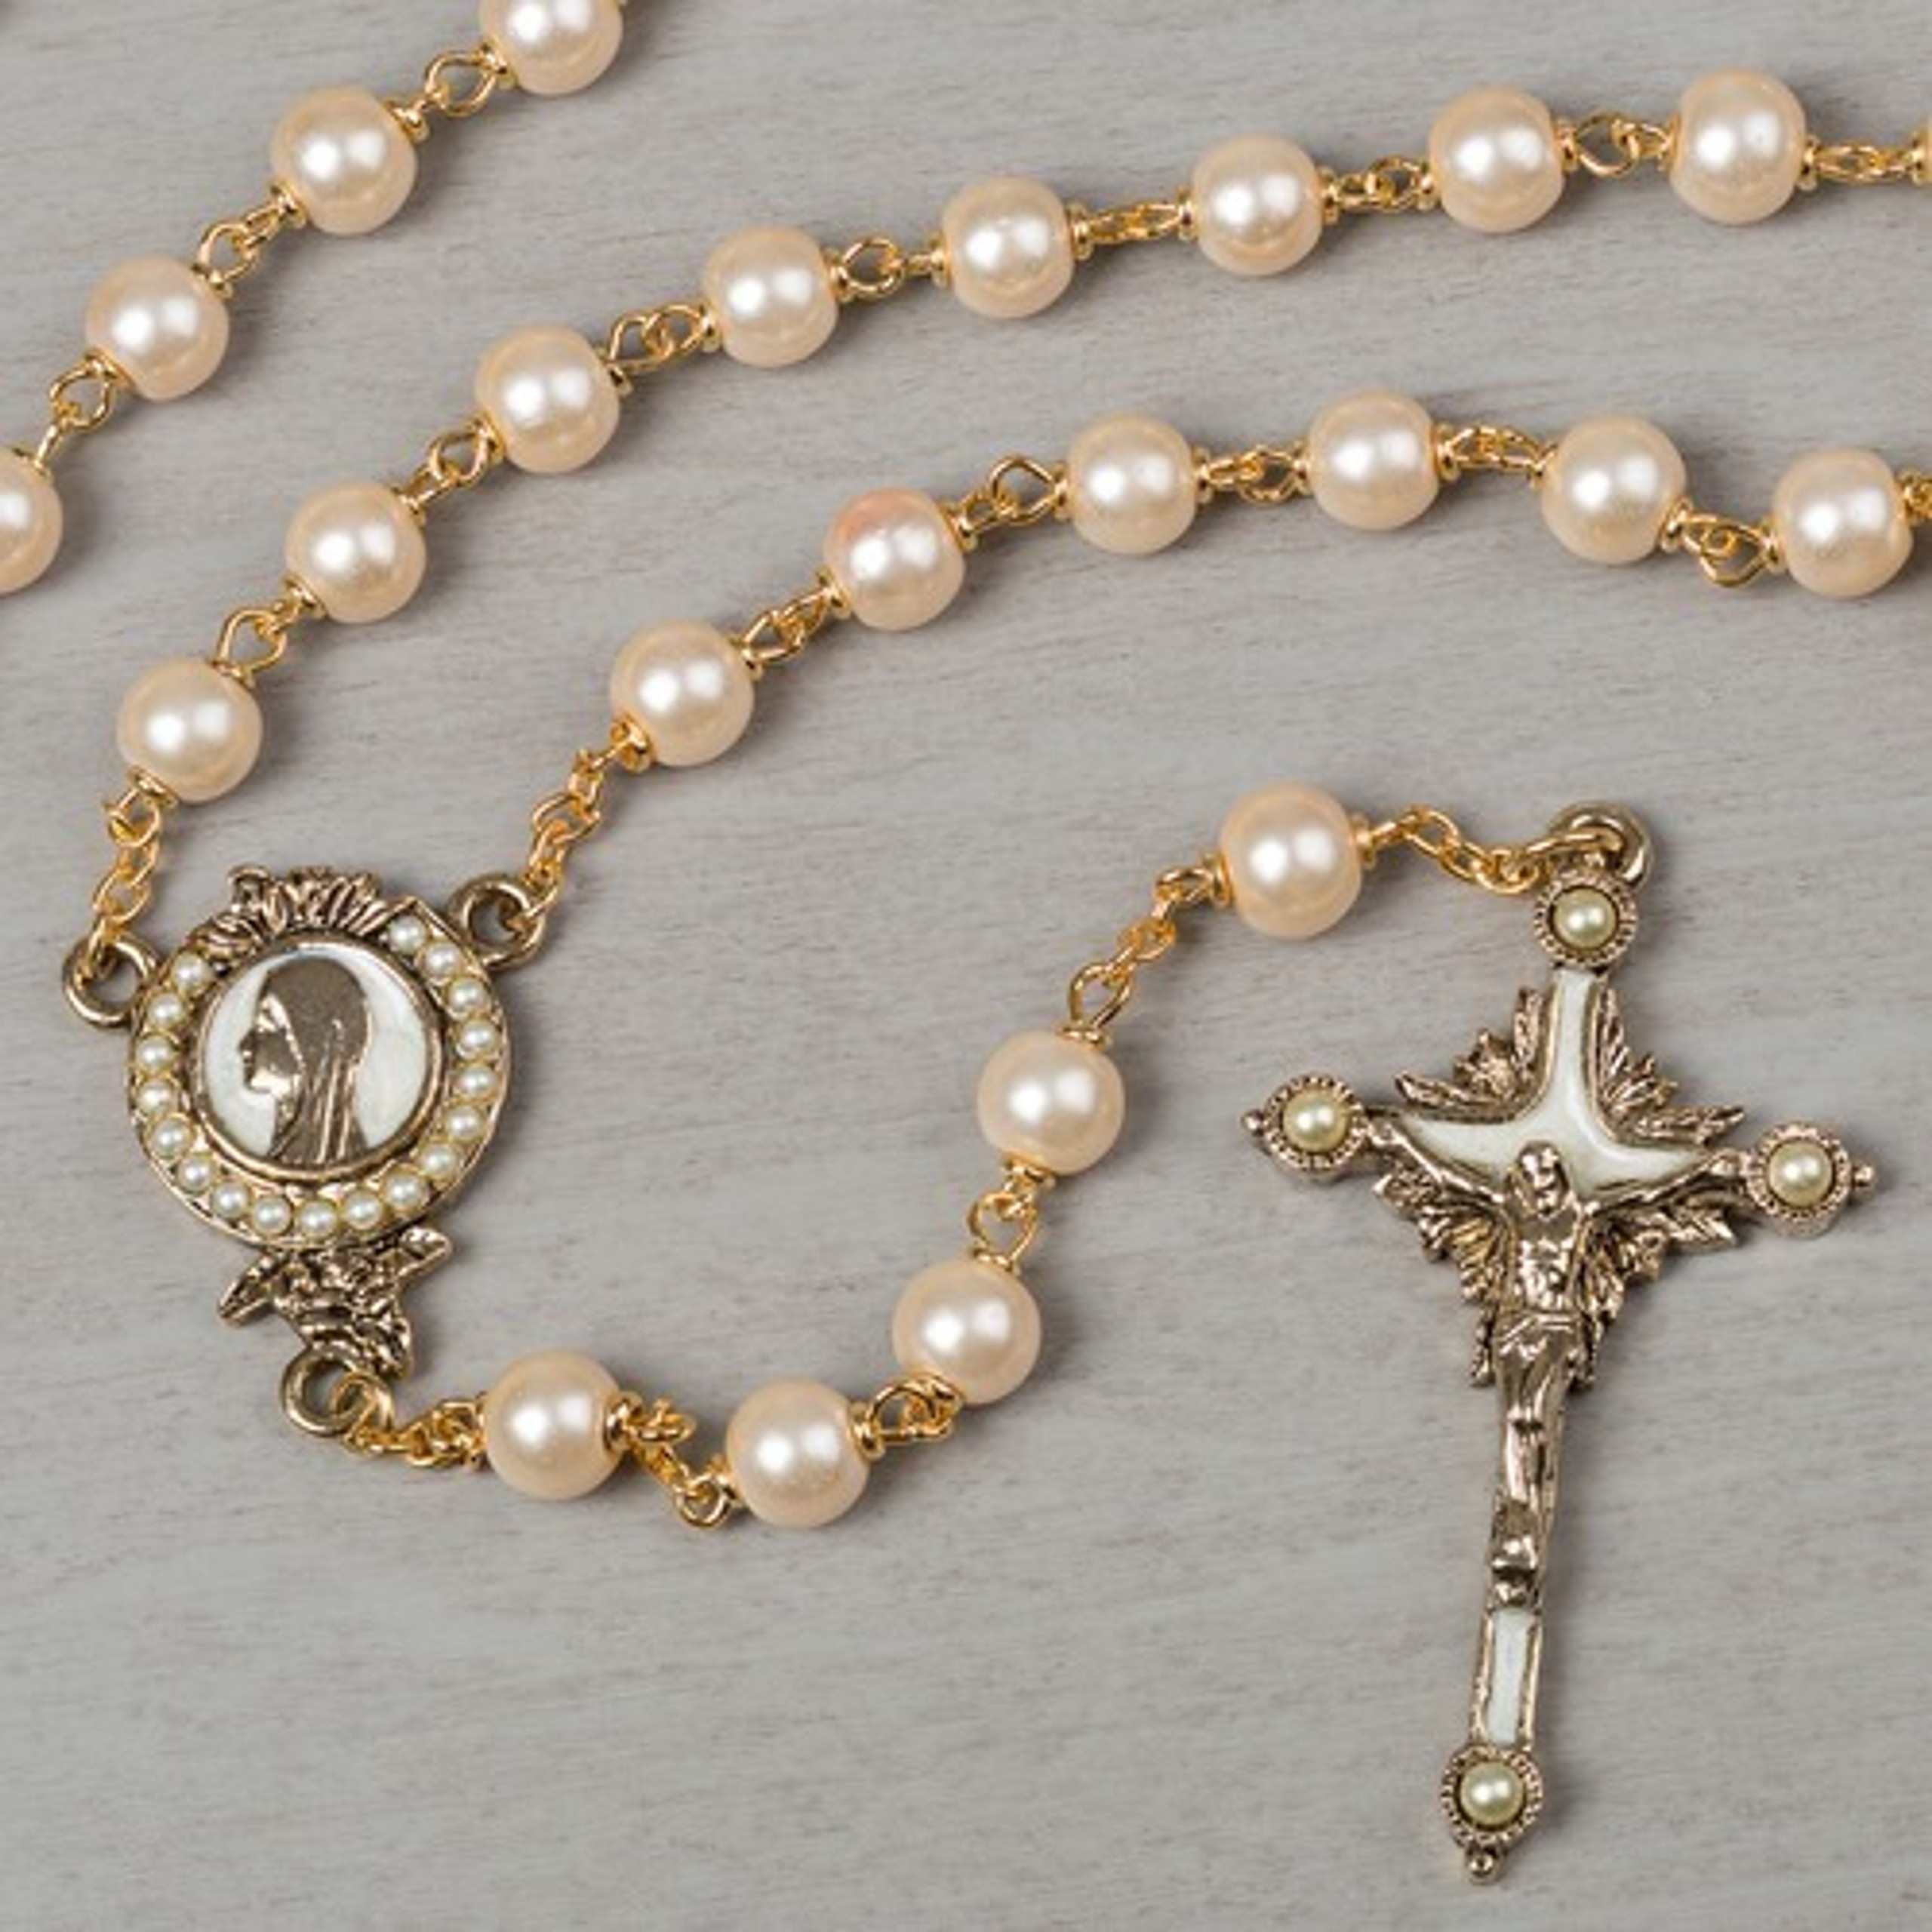 Pearls of Mary Rosary | The Catholic Company®